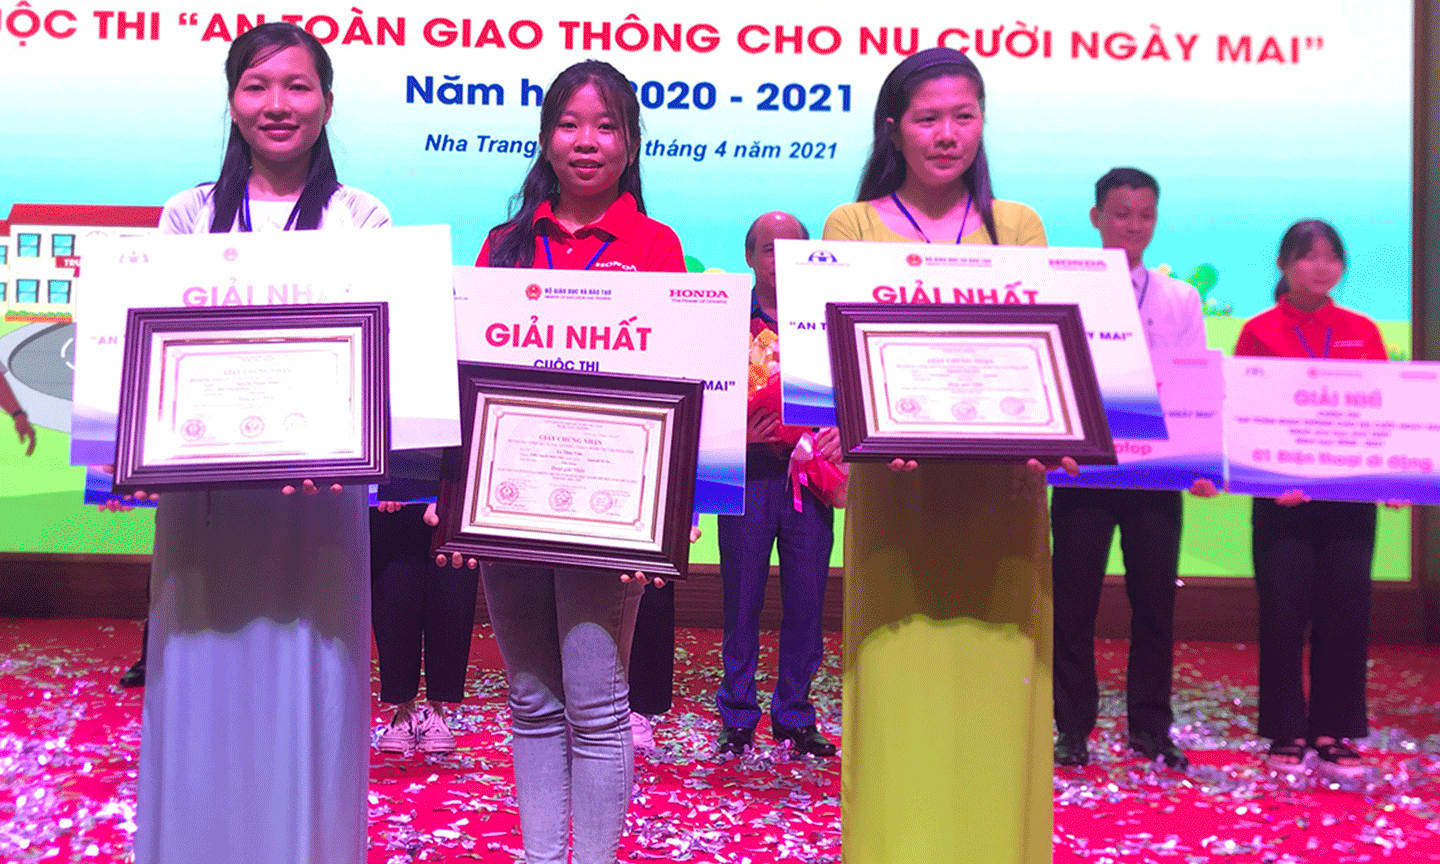 Tiền Giang đoạt 3 giải Nhất Tiền Giang đoạt 3 giải Nhất cuộc thi An toàn giao thông cho nụ cười ngày mai. 